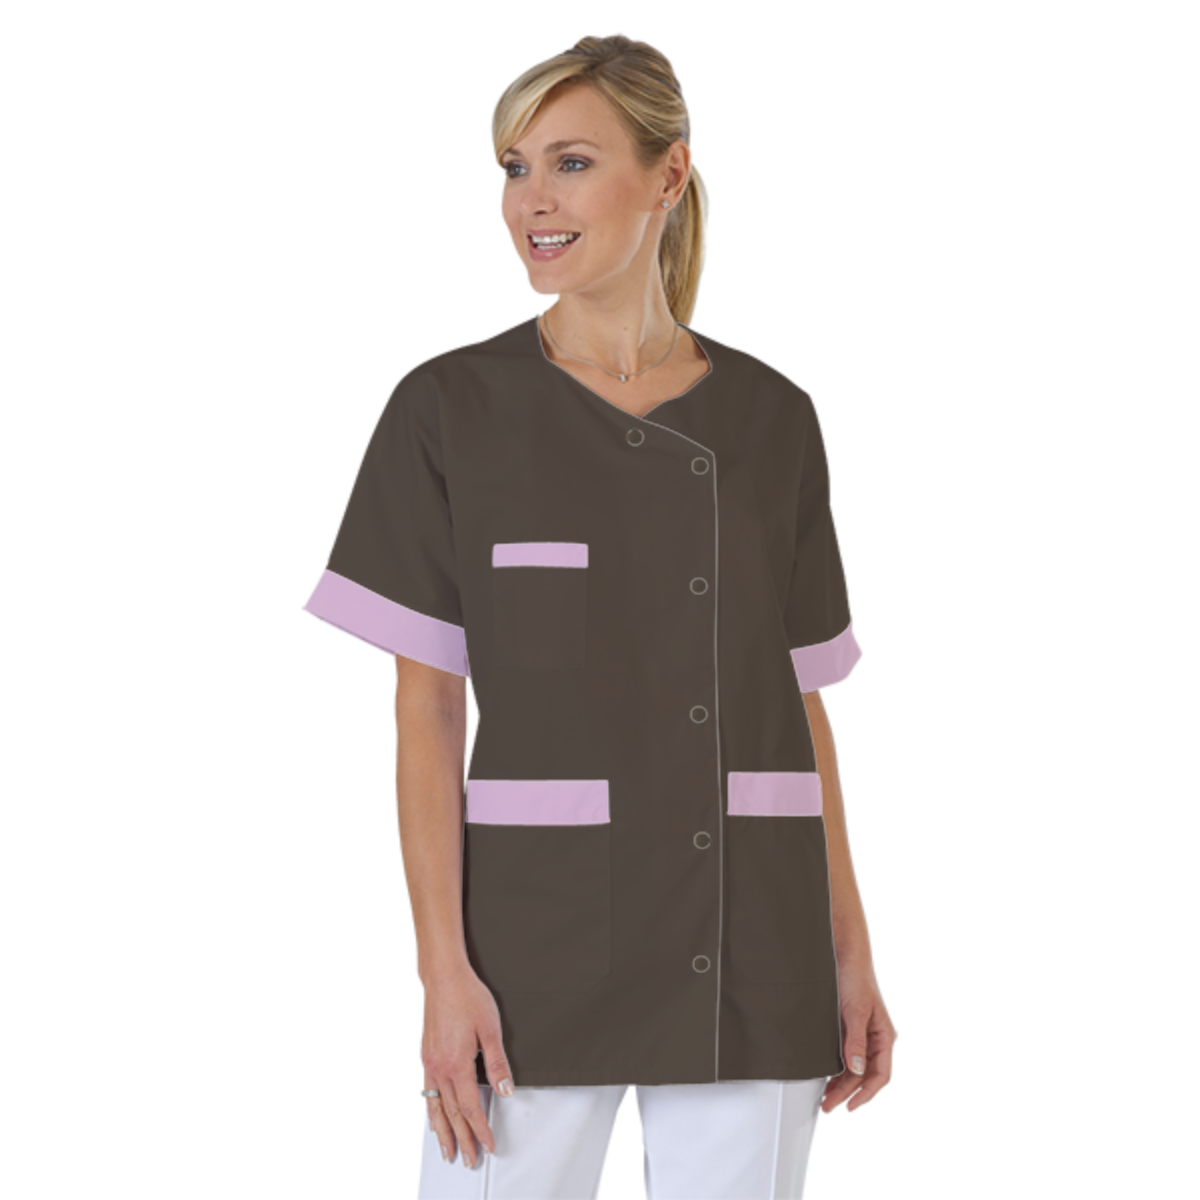 blouse-infirmiere-personnalise-col-trapeze acheté - par Emeline - le 05-11-2021